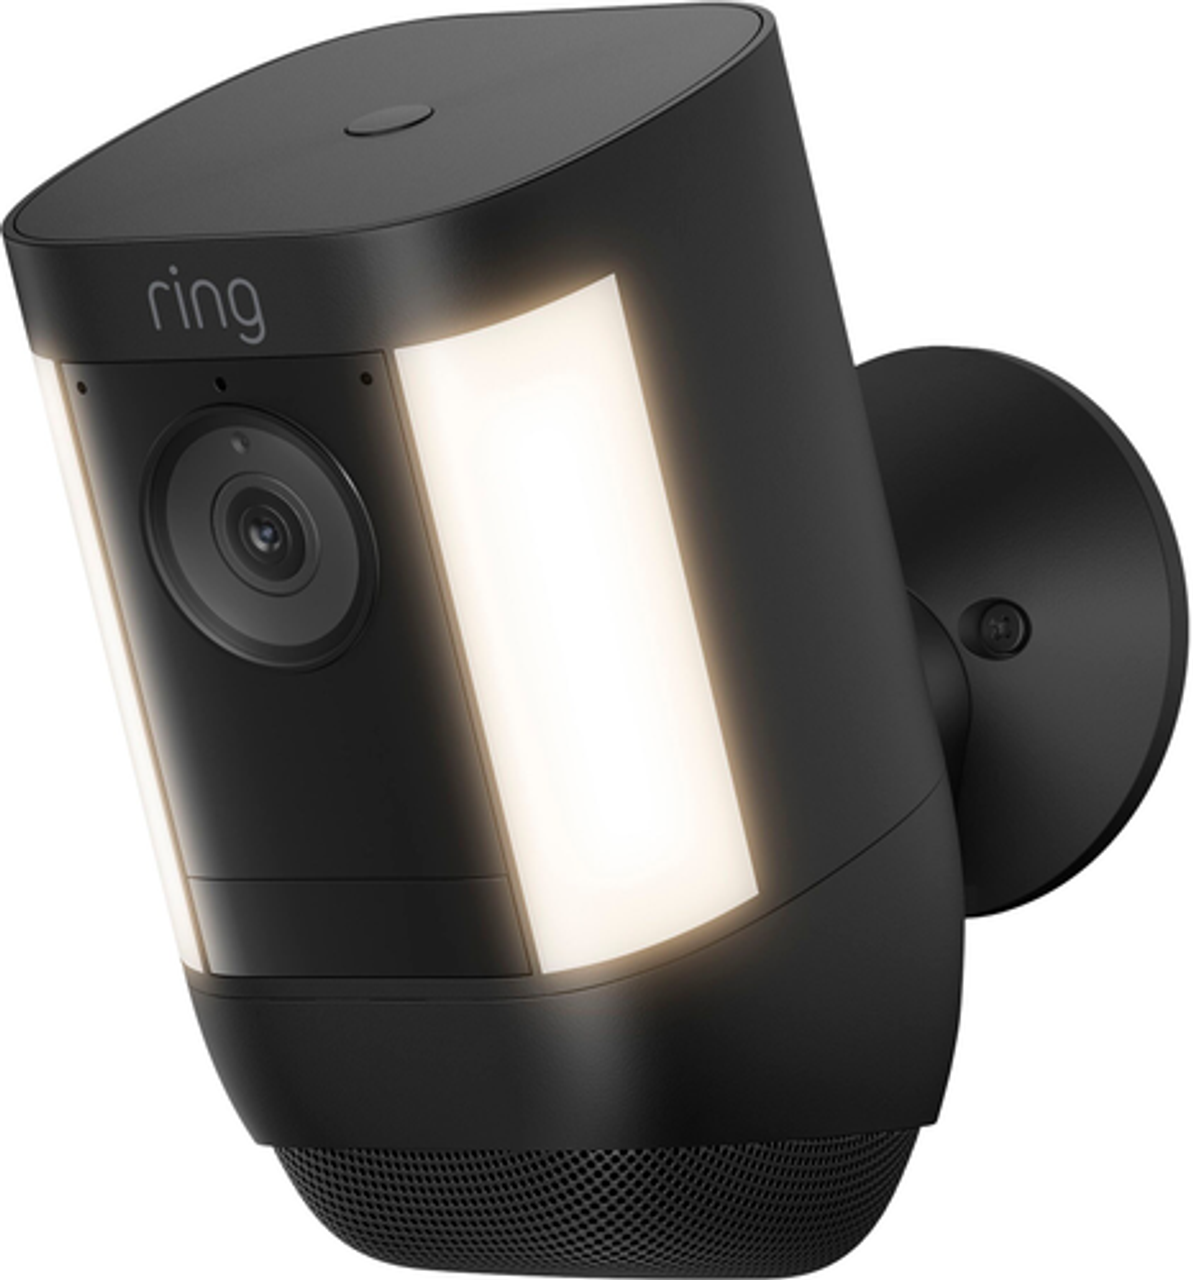 Ring - Spotlight Cam Pro - Battery - Outdoor Wireless 1080p Surveillance Camera - Black